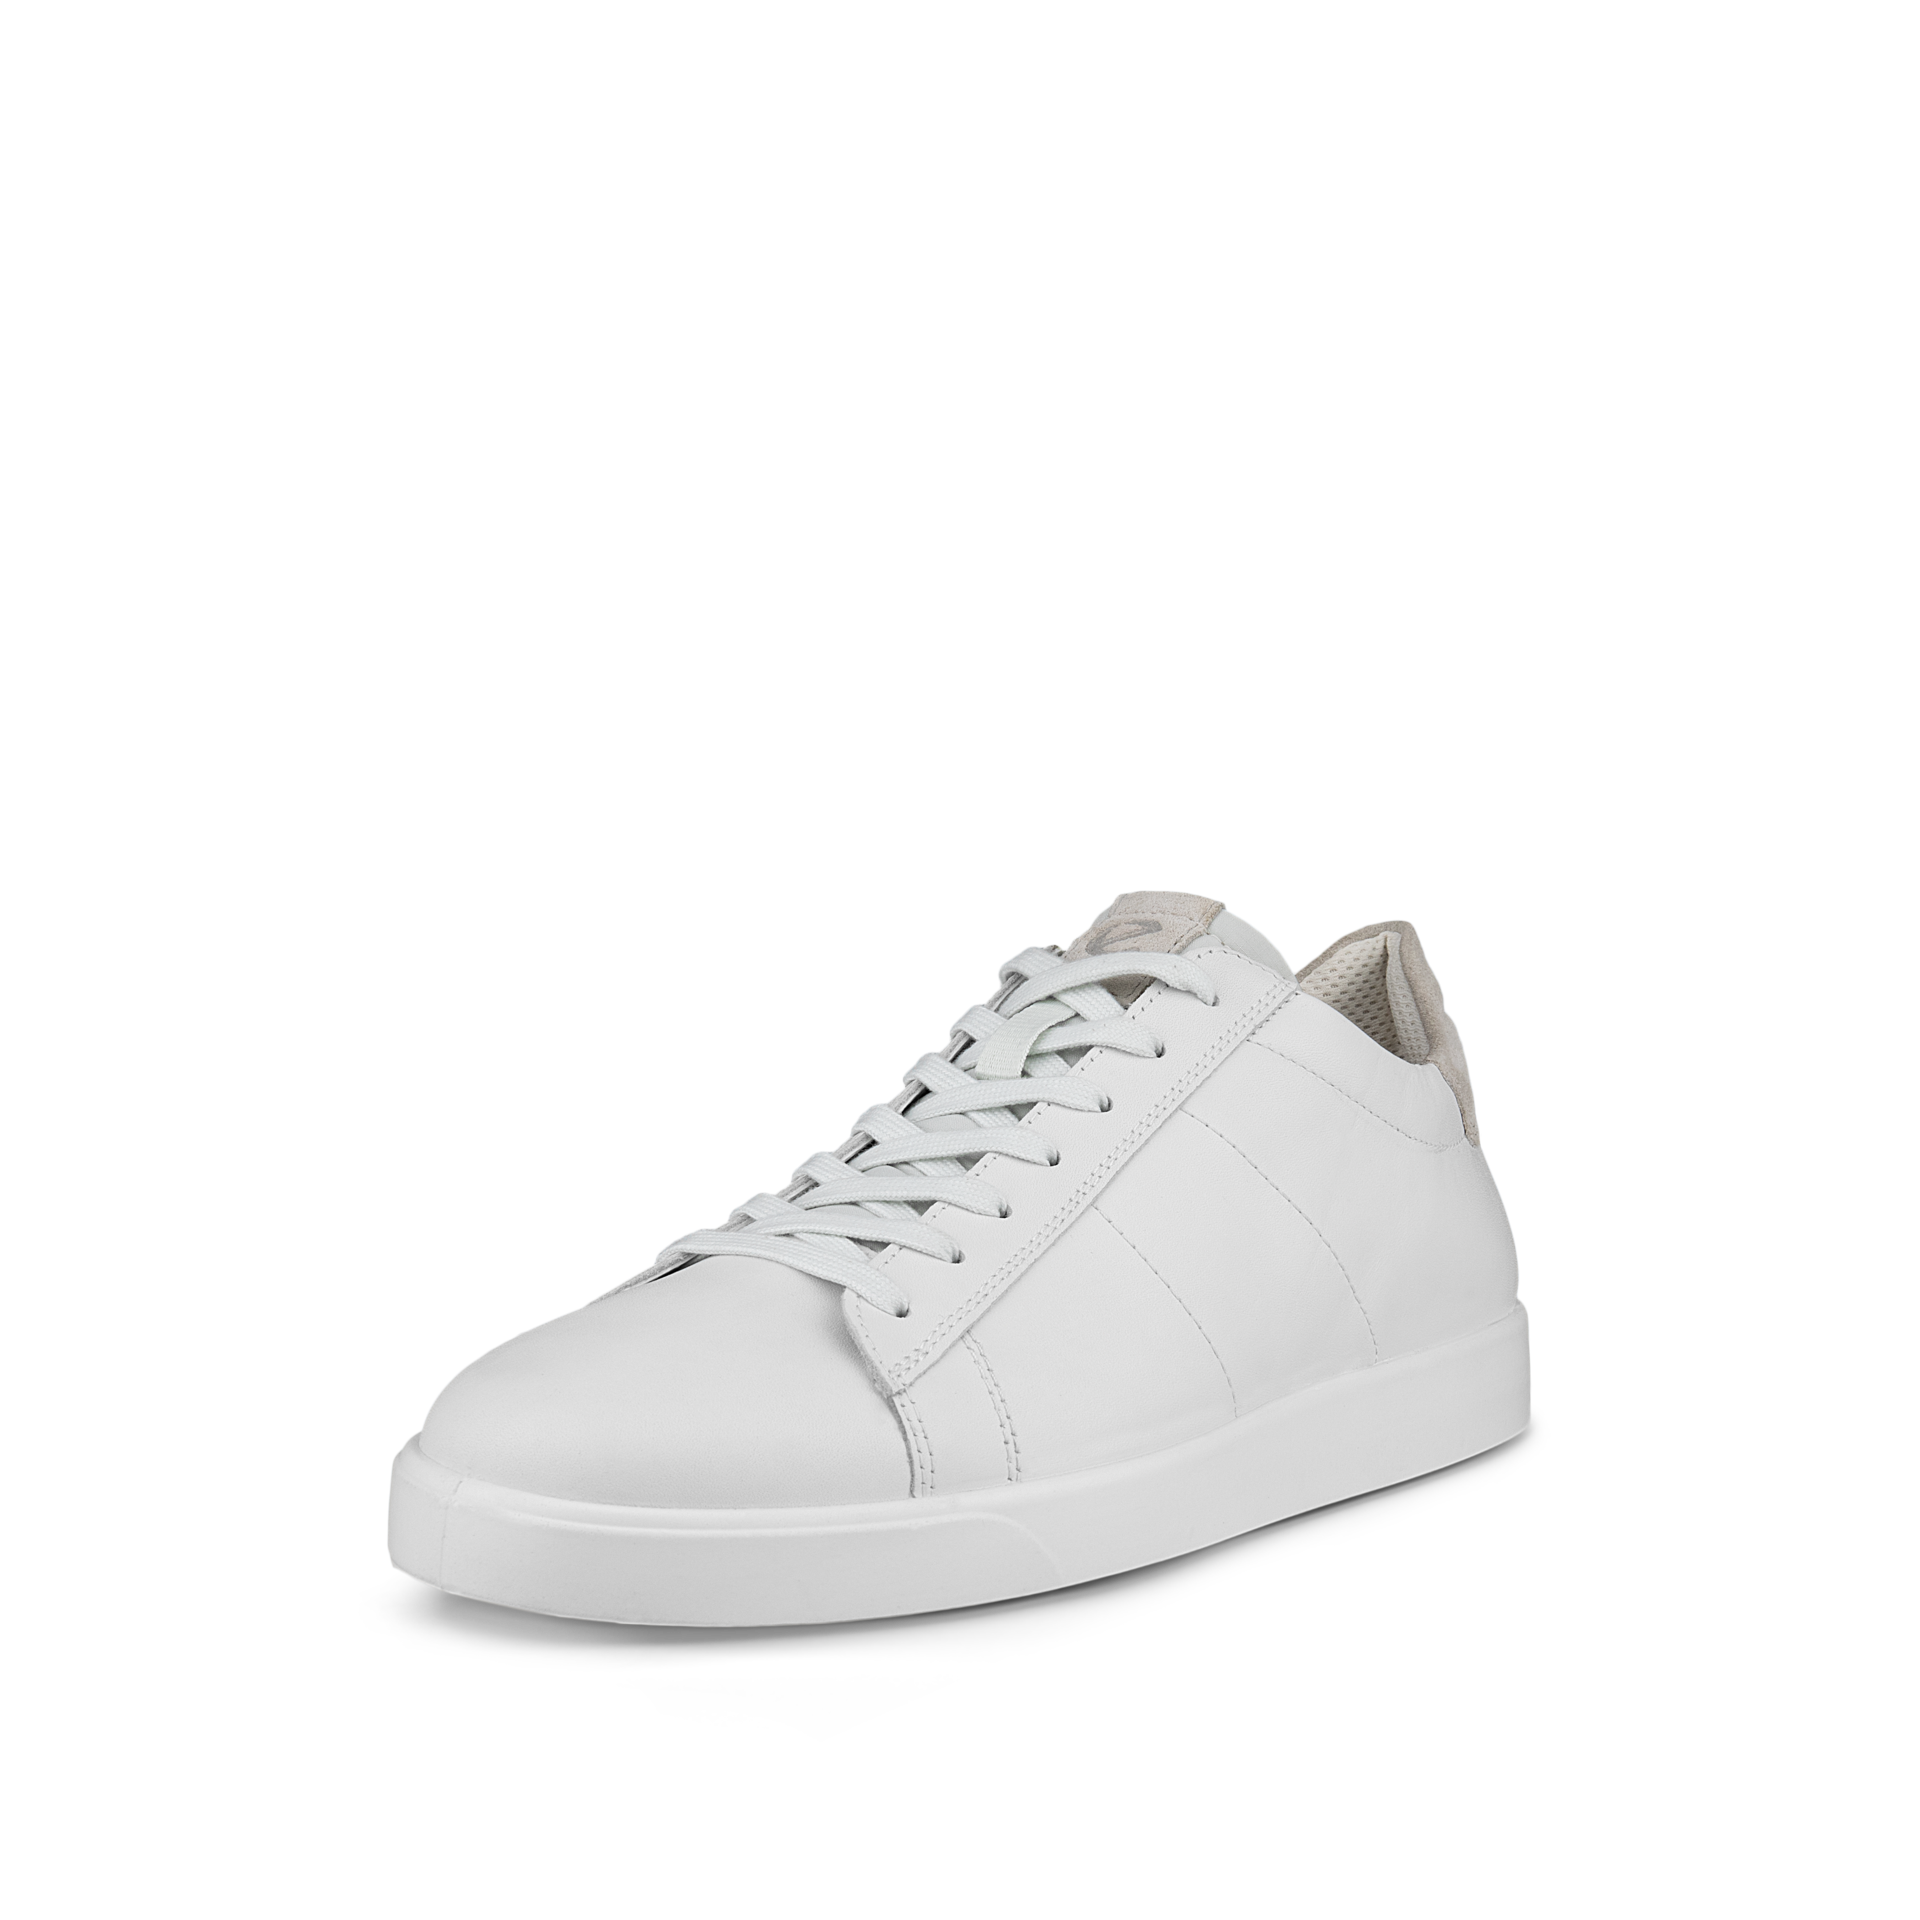 Street Lite Retro Sneaker White (Men's size scale)